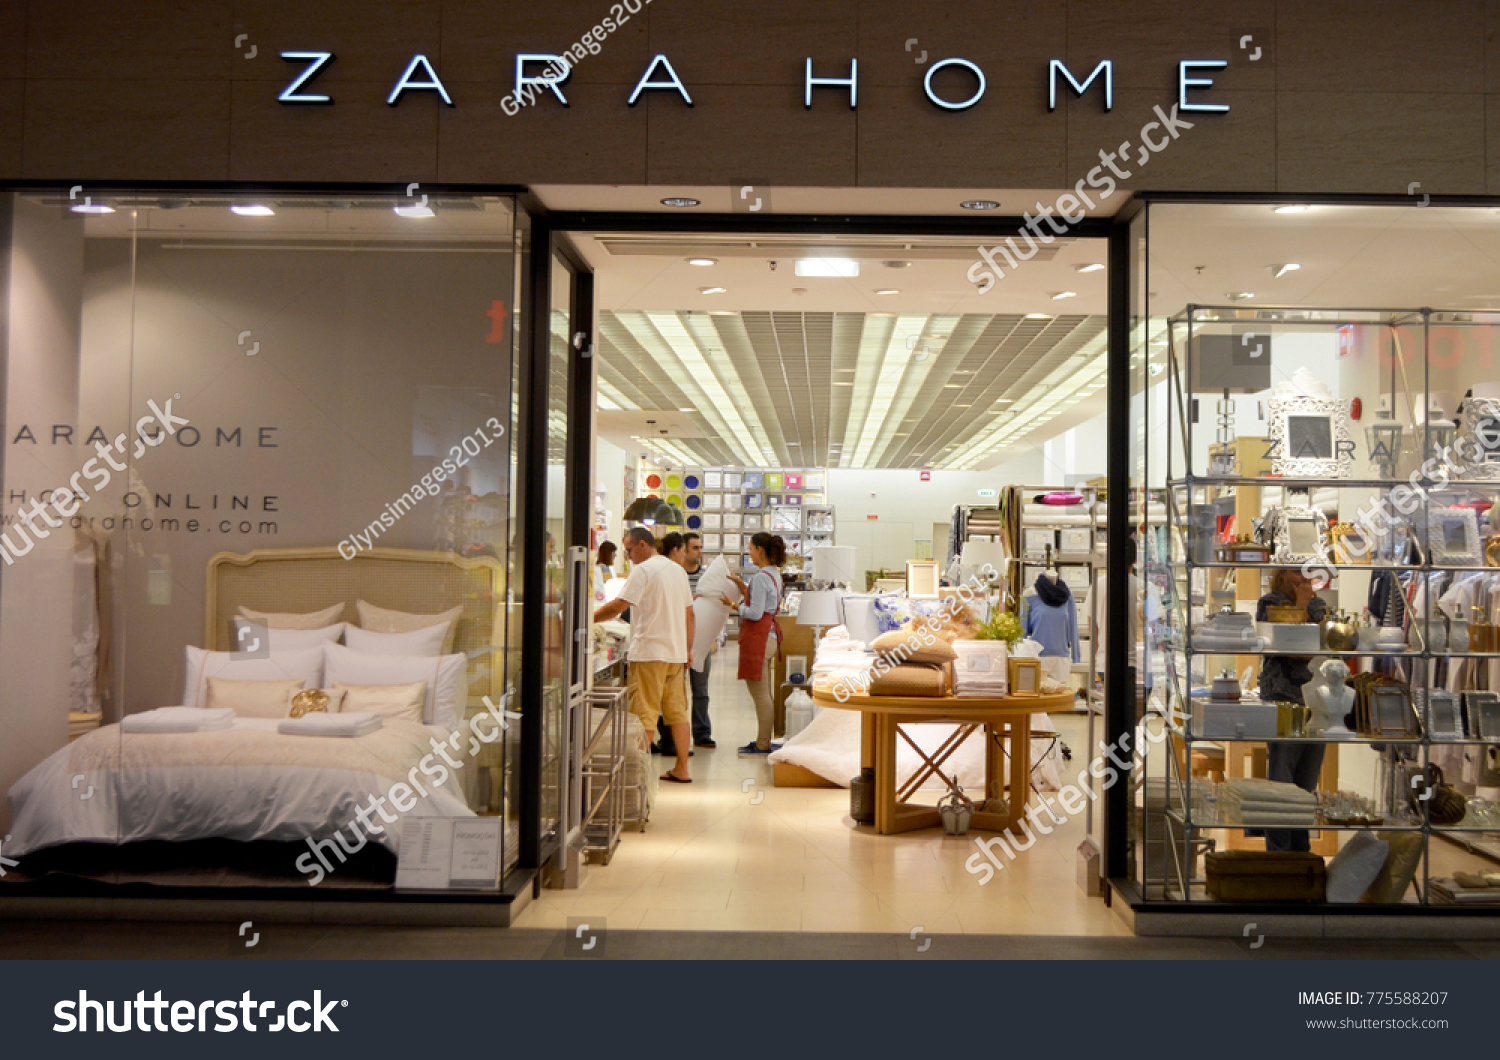 zara home shop online